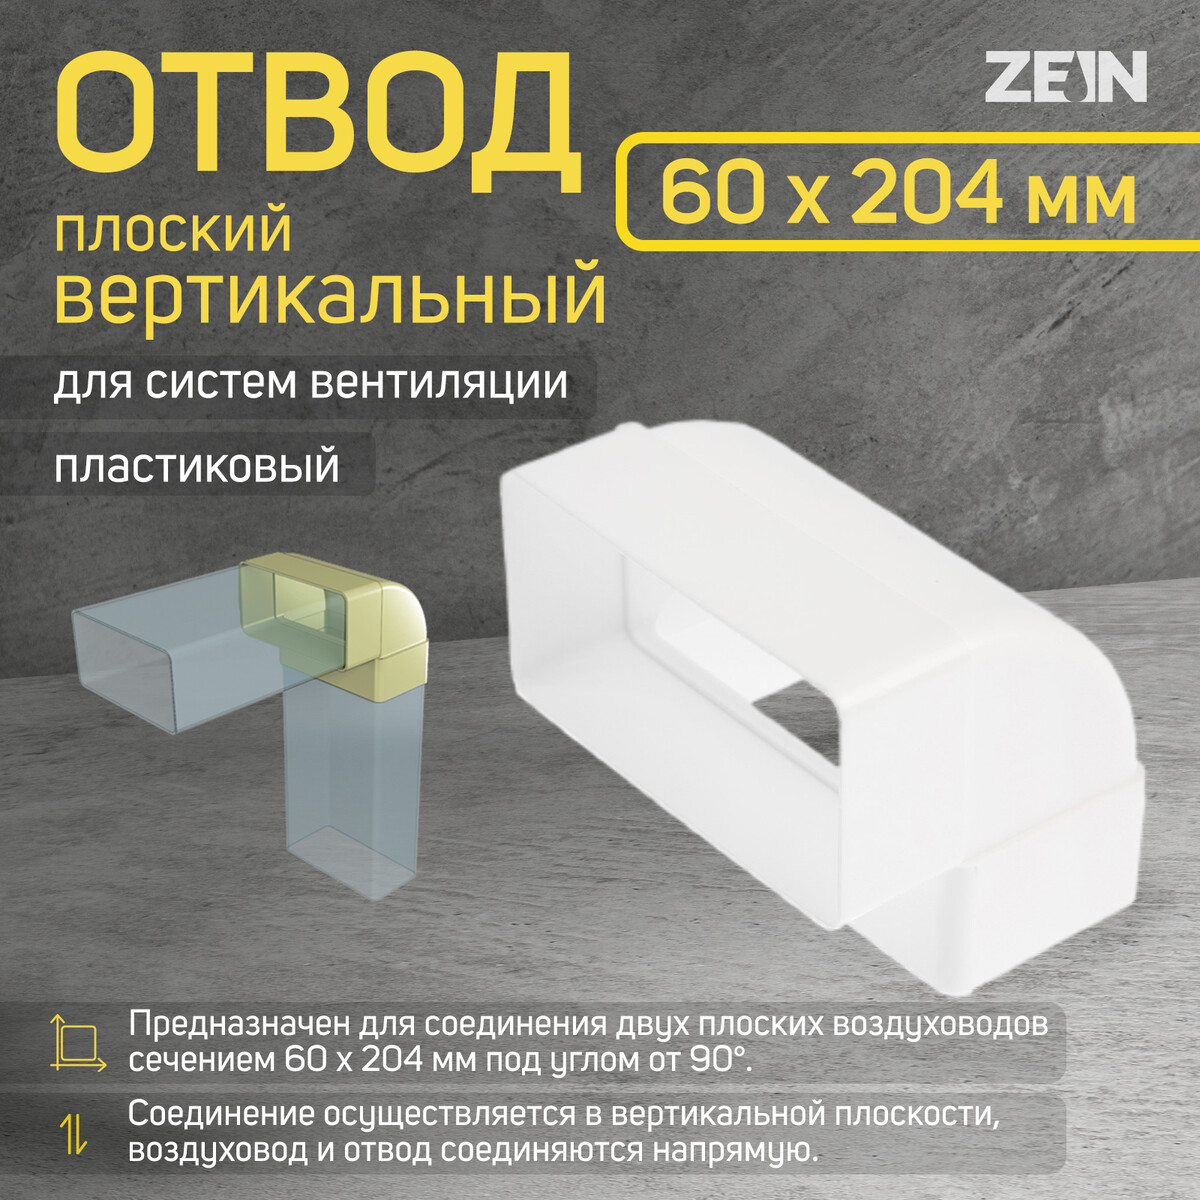 Отвод zein, плоский, вертикальный, вентиляционный, 60 х 204 мм